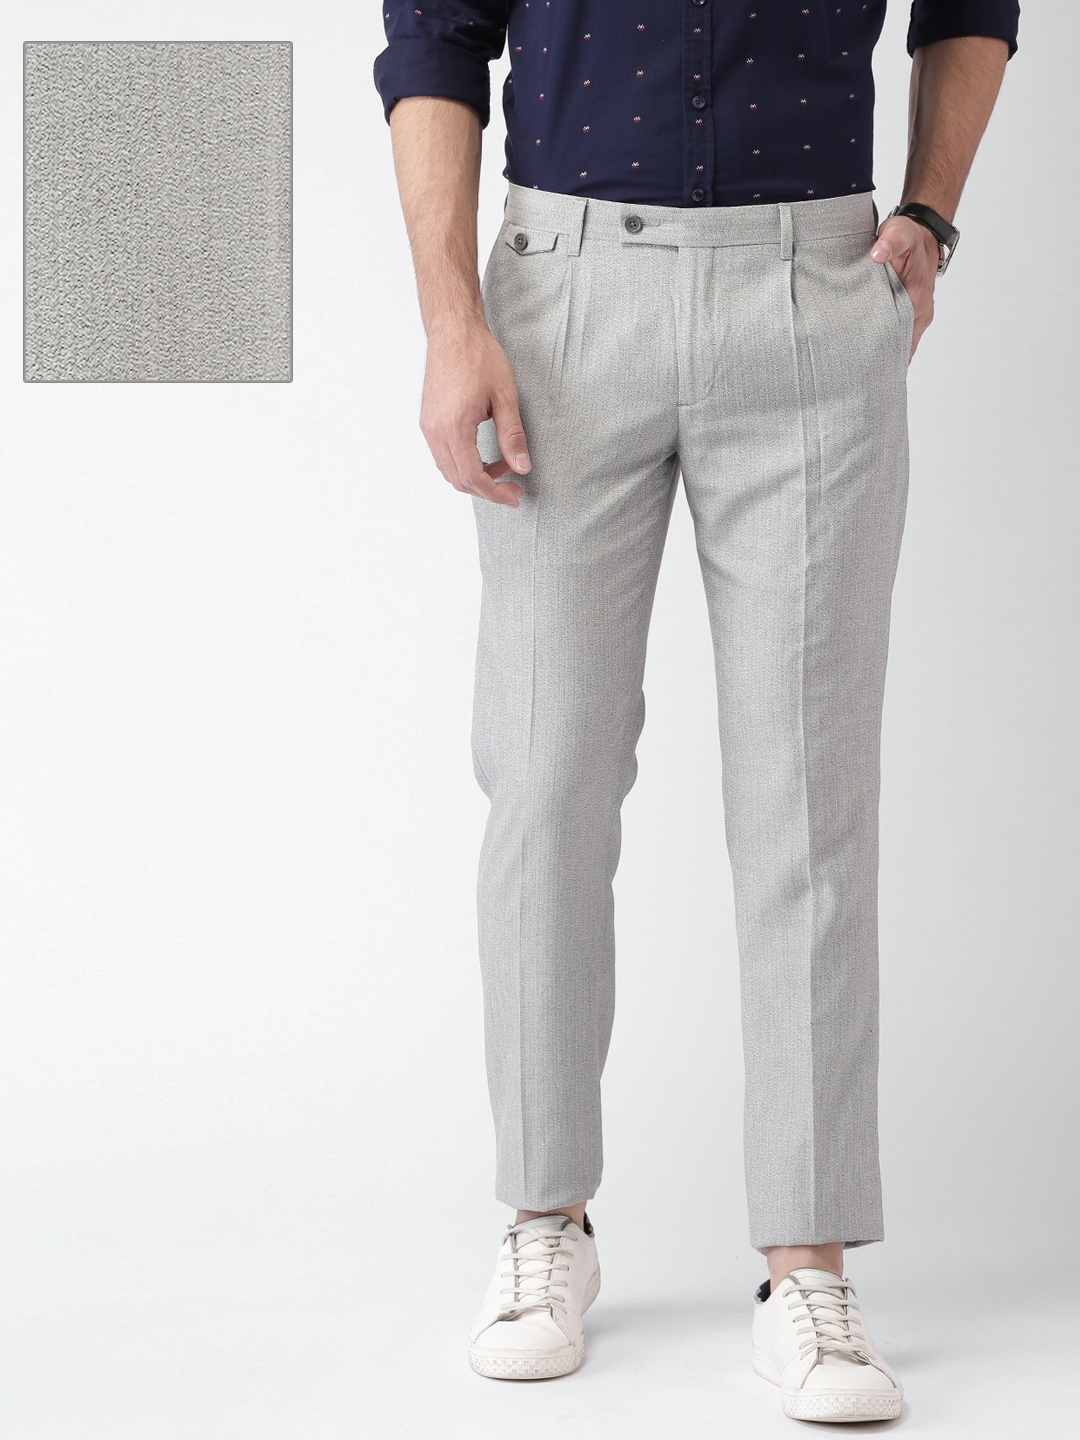 Buy INVICTUS Men Grey Self Design Slim Fit Formal Trousers ...